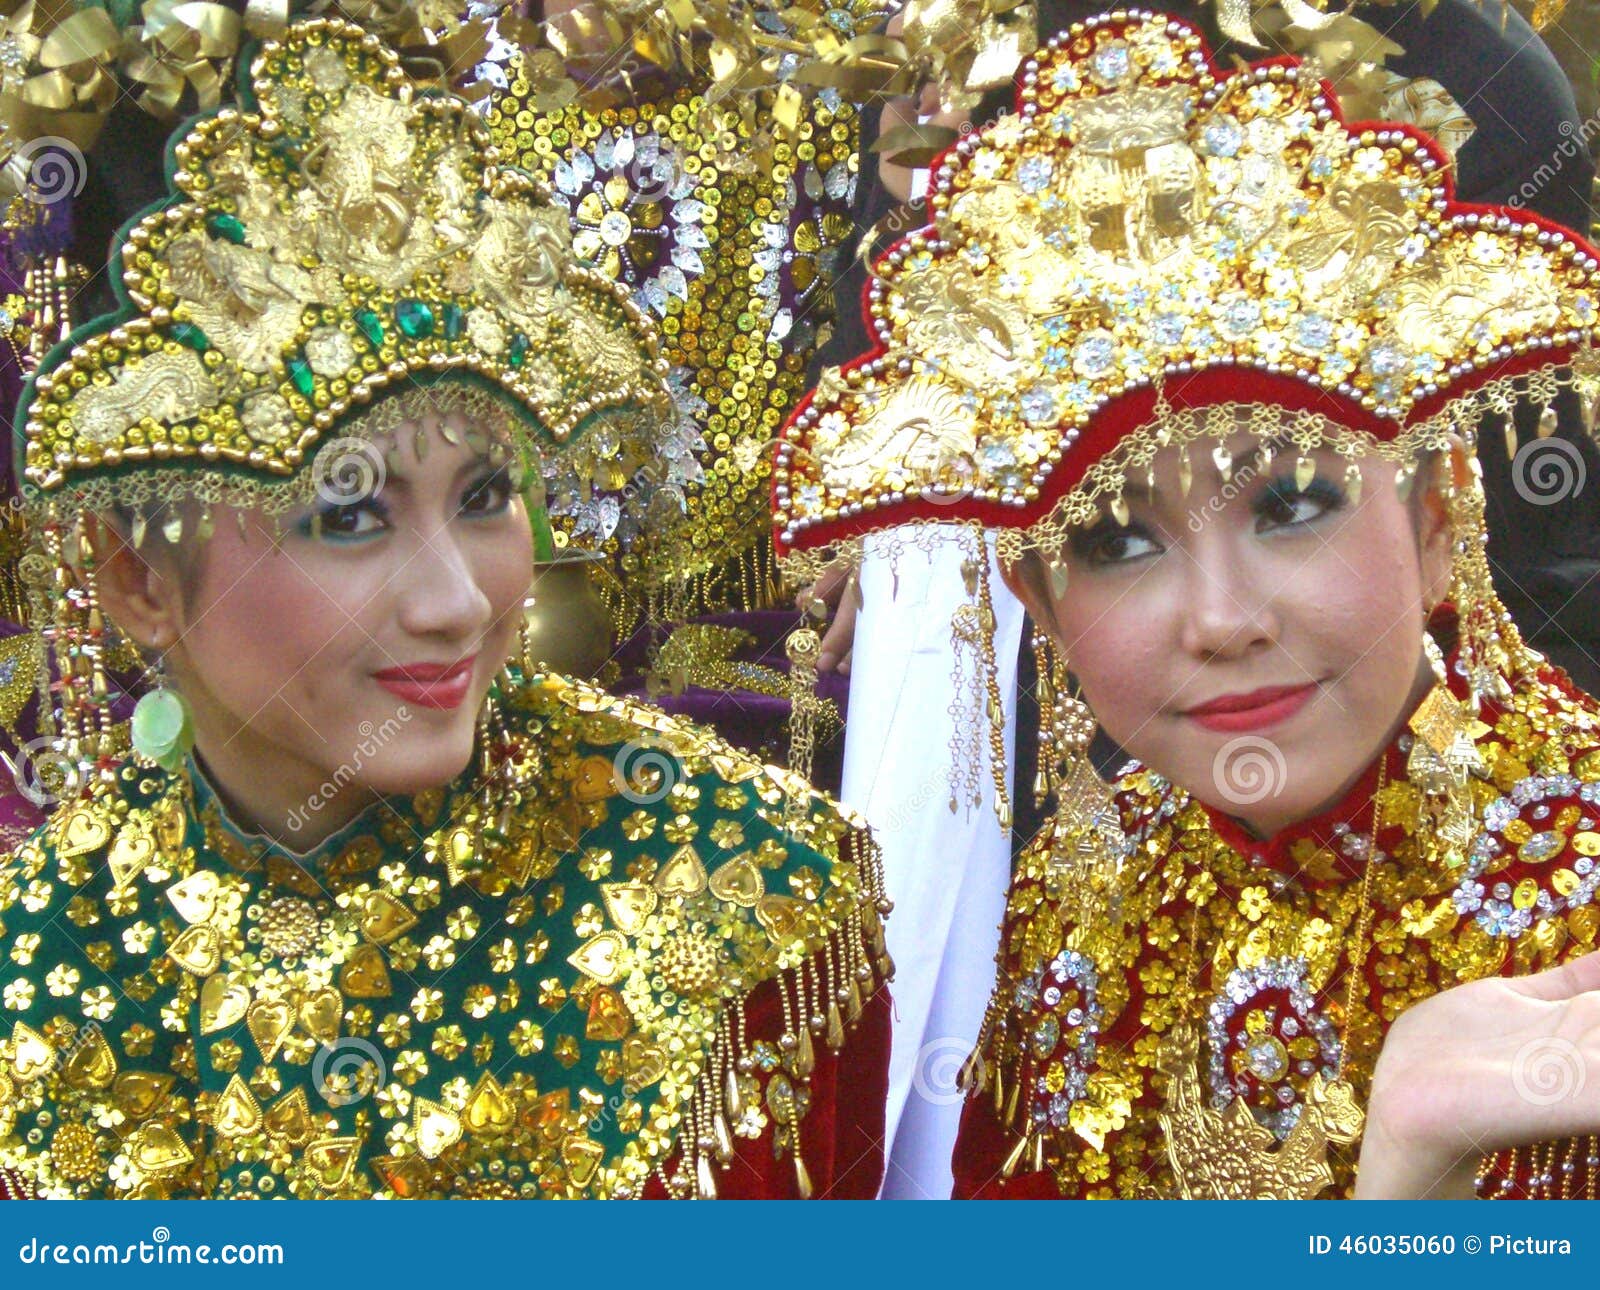 小组传统服装的美丽的巴厘语人舞蹈家 编辑类库存照片. 图片 包括有 男性, 巴厘岛, 钞票, 印度尼西亚语 - 88393723